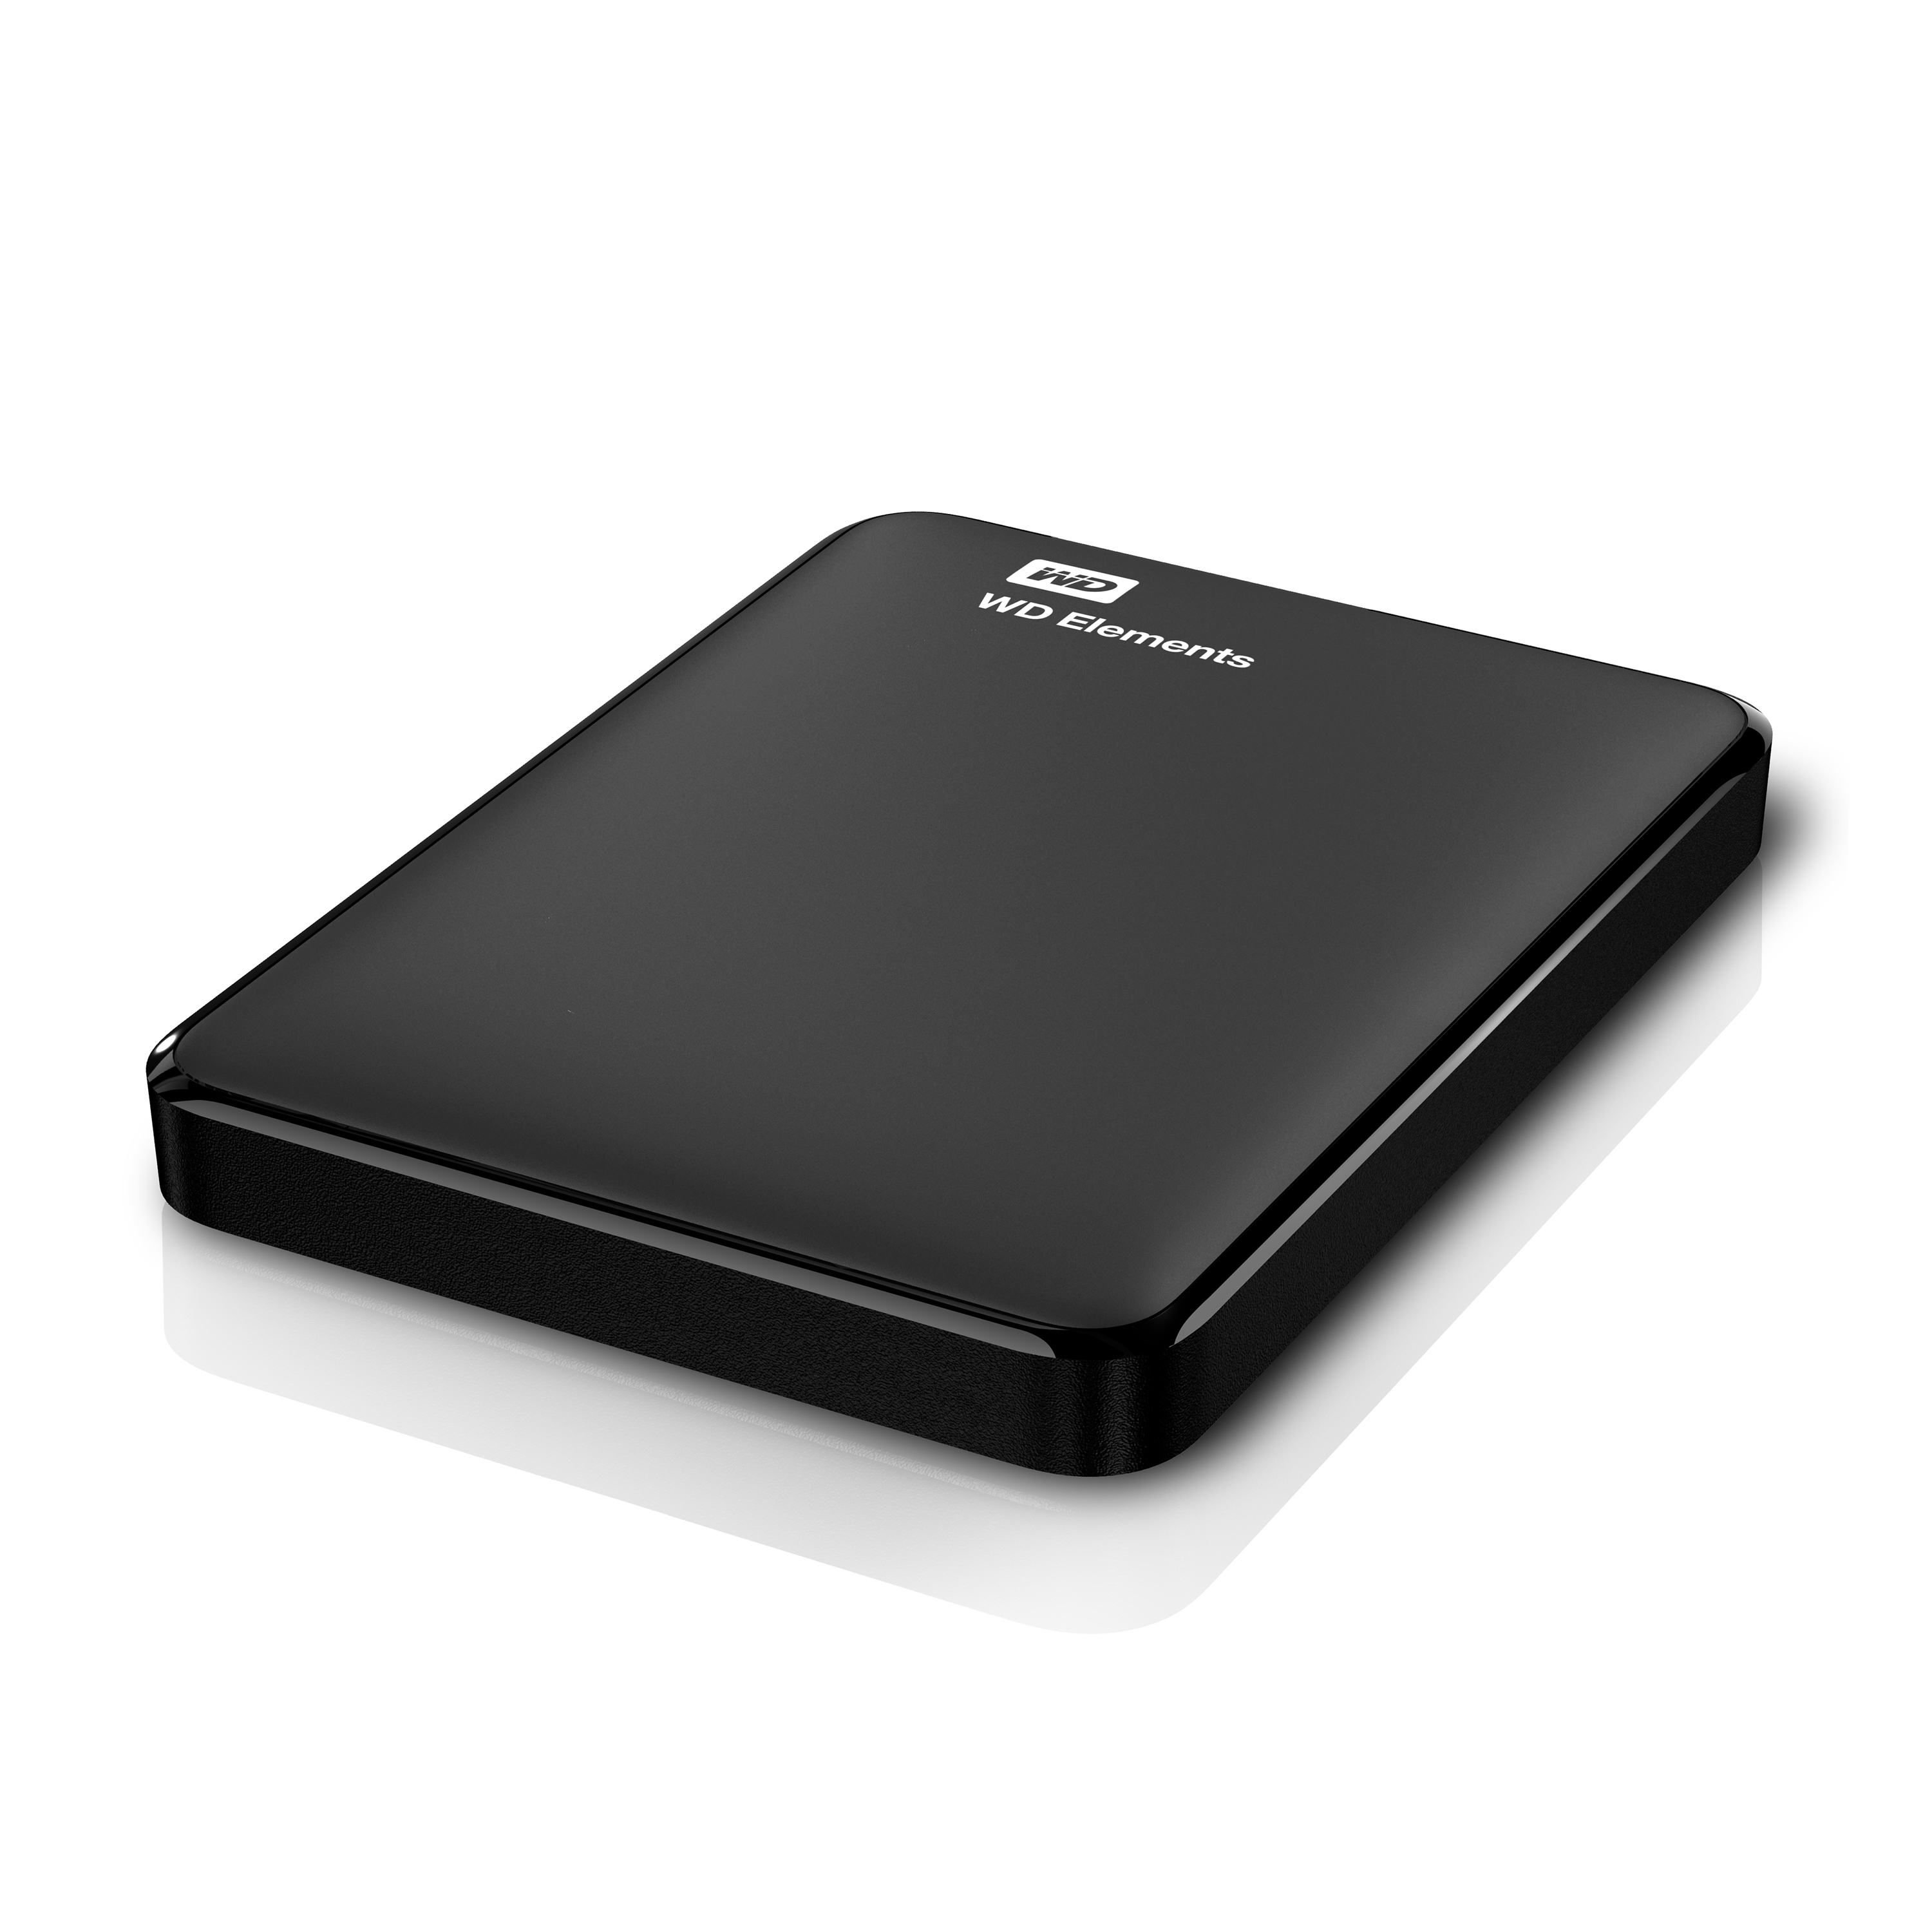 Hard disk esterno Western Digital WD Elements Portable disco rigido 750 GB Nero [WDBUZG7500ABK-WESN]